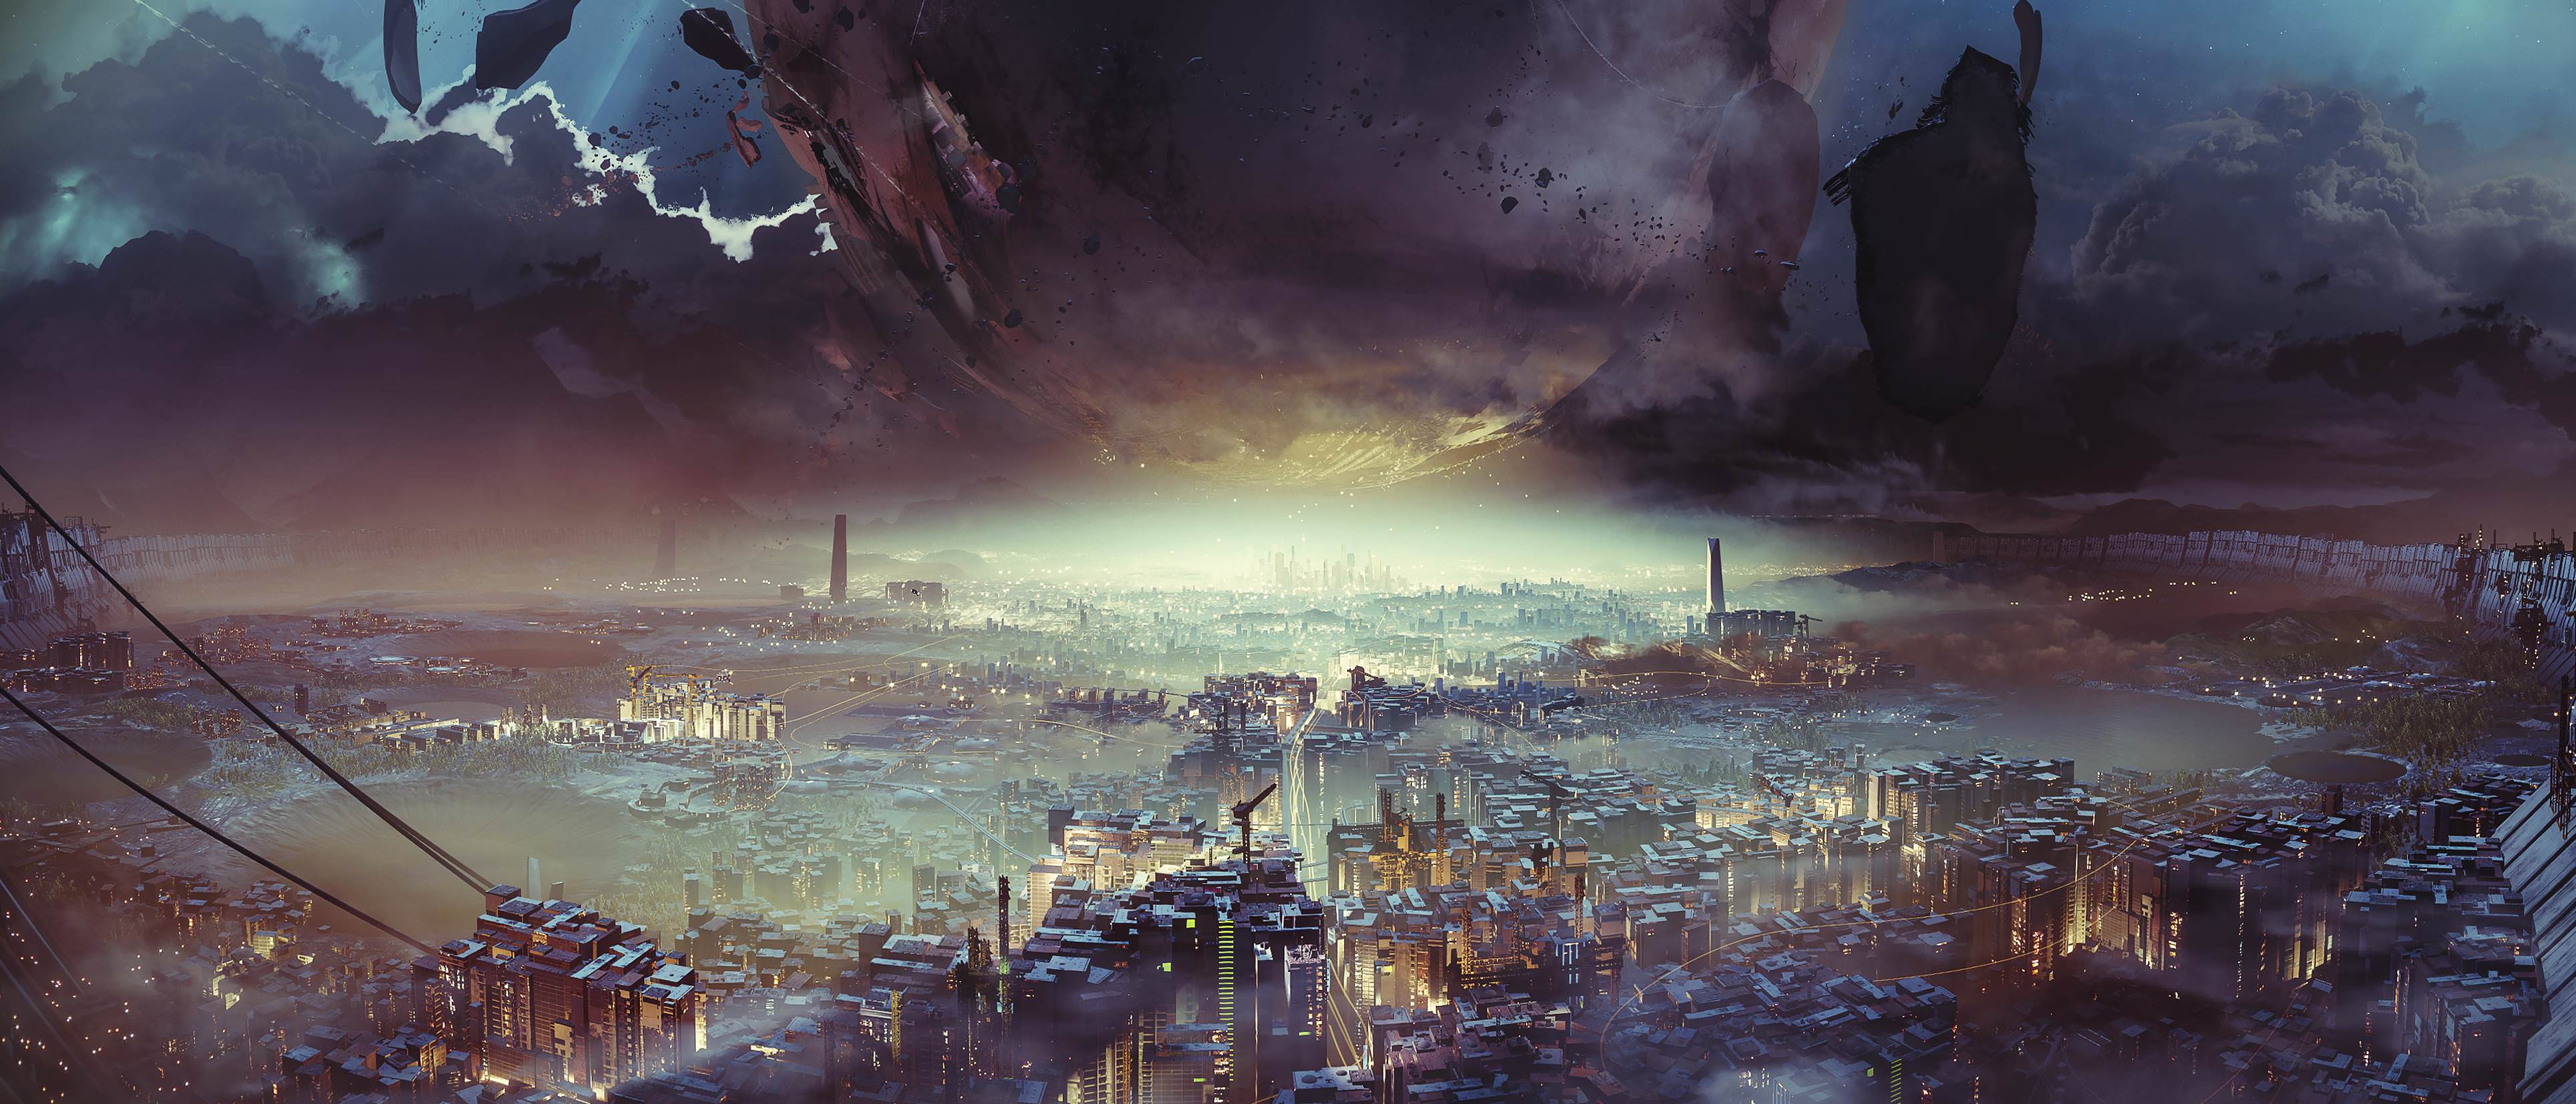 General 3860x1654 Destiny 2 digital art artwork landscape city cityscape video games science fiction Destiny (video game)